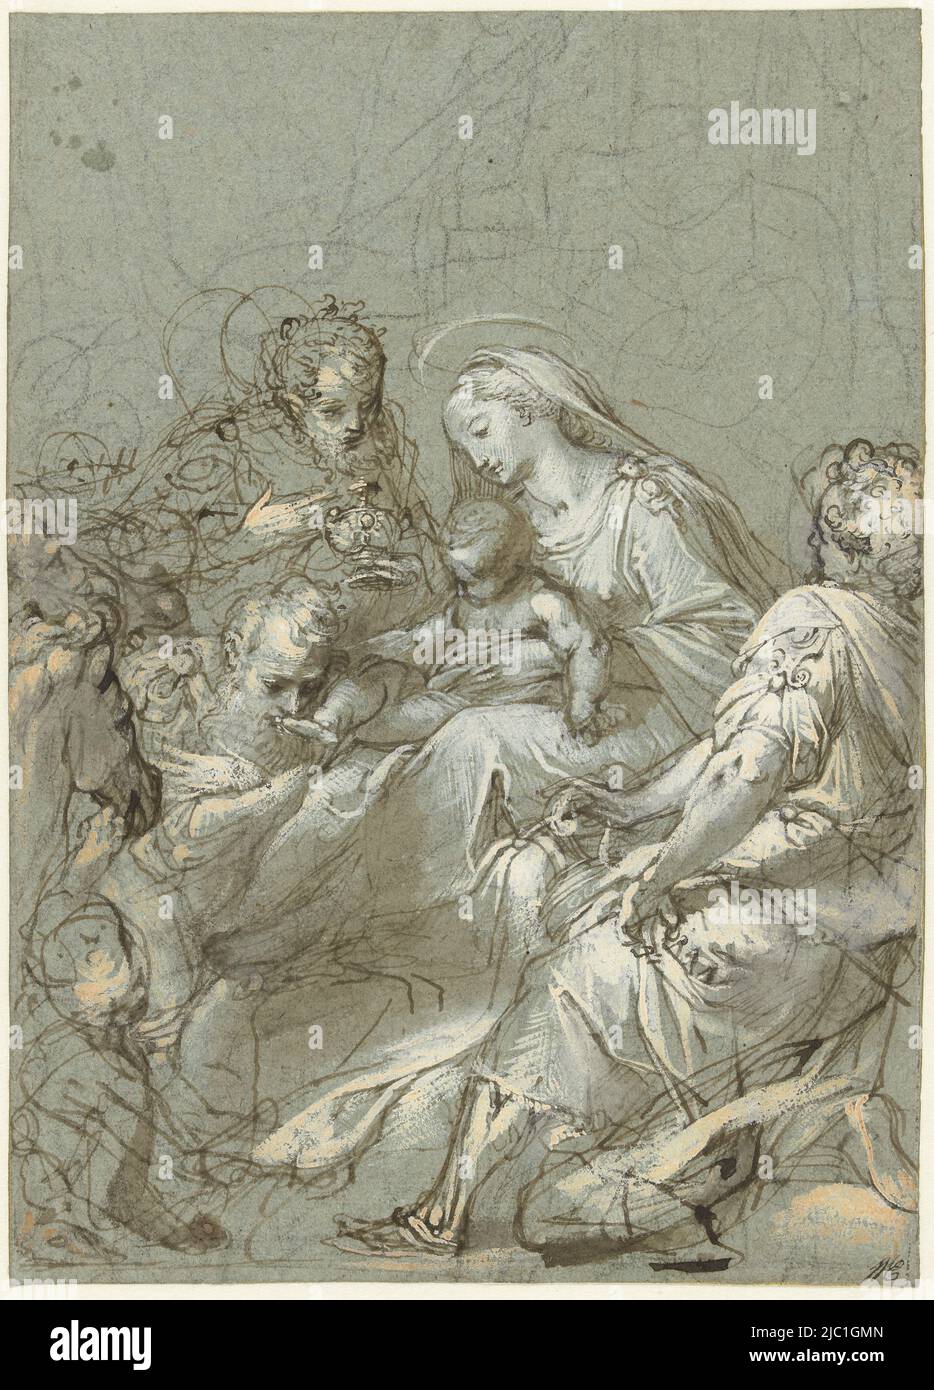 Anbetung der Könige, Zeichner: Federico Barocci, 1545 - 1612, Papier, Stift, Bürste, H 293 mm × B 209 mm Stockfoto